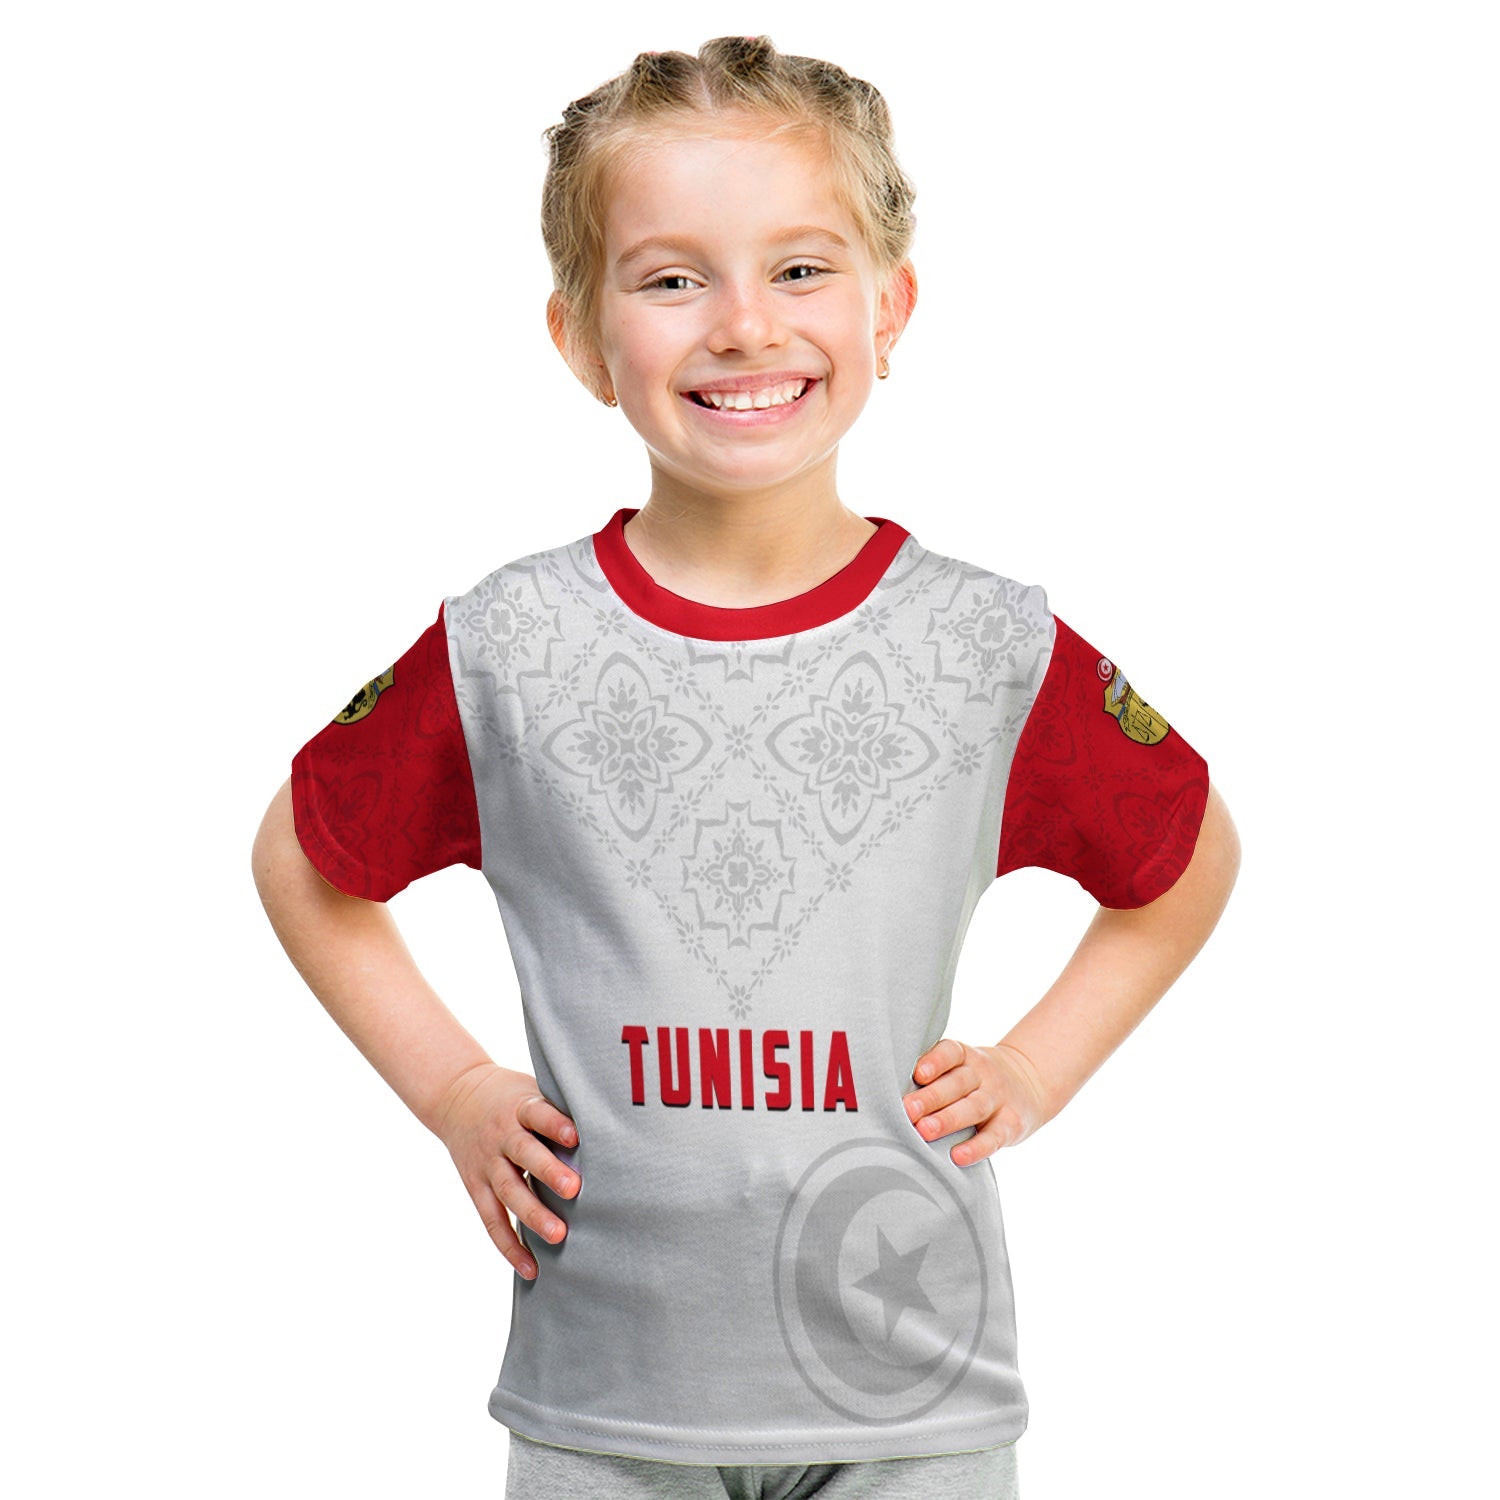 tunisia-t-shirt-kid-tunisian-patterns-sporty-style